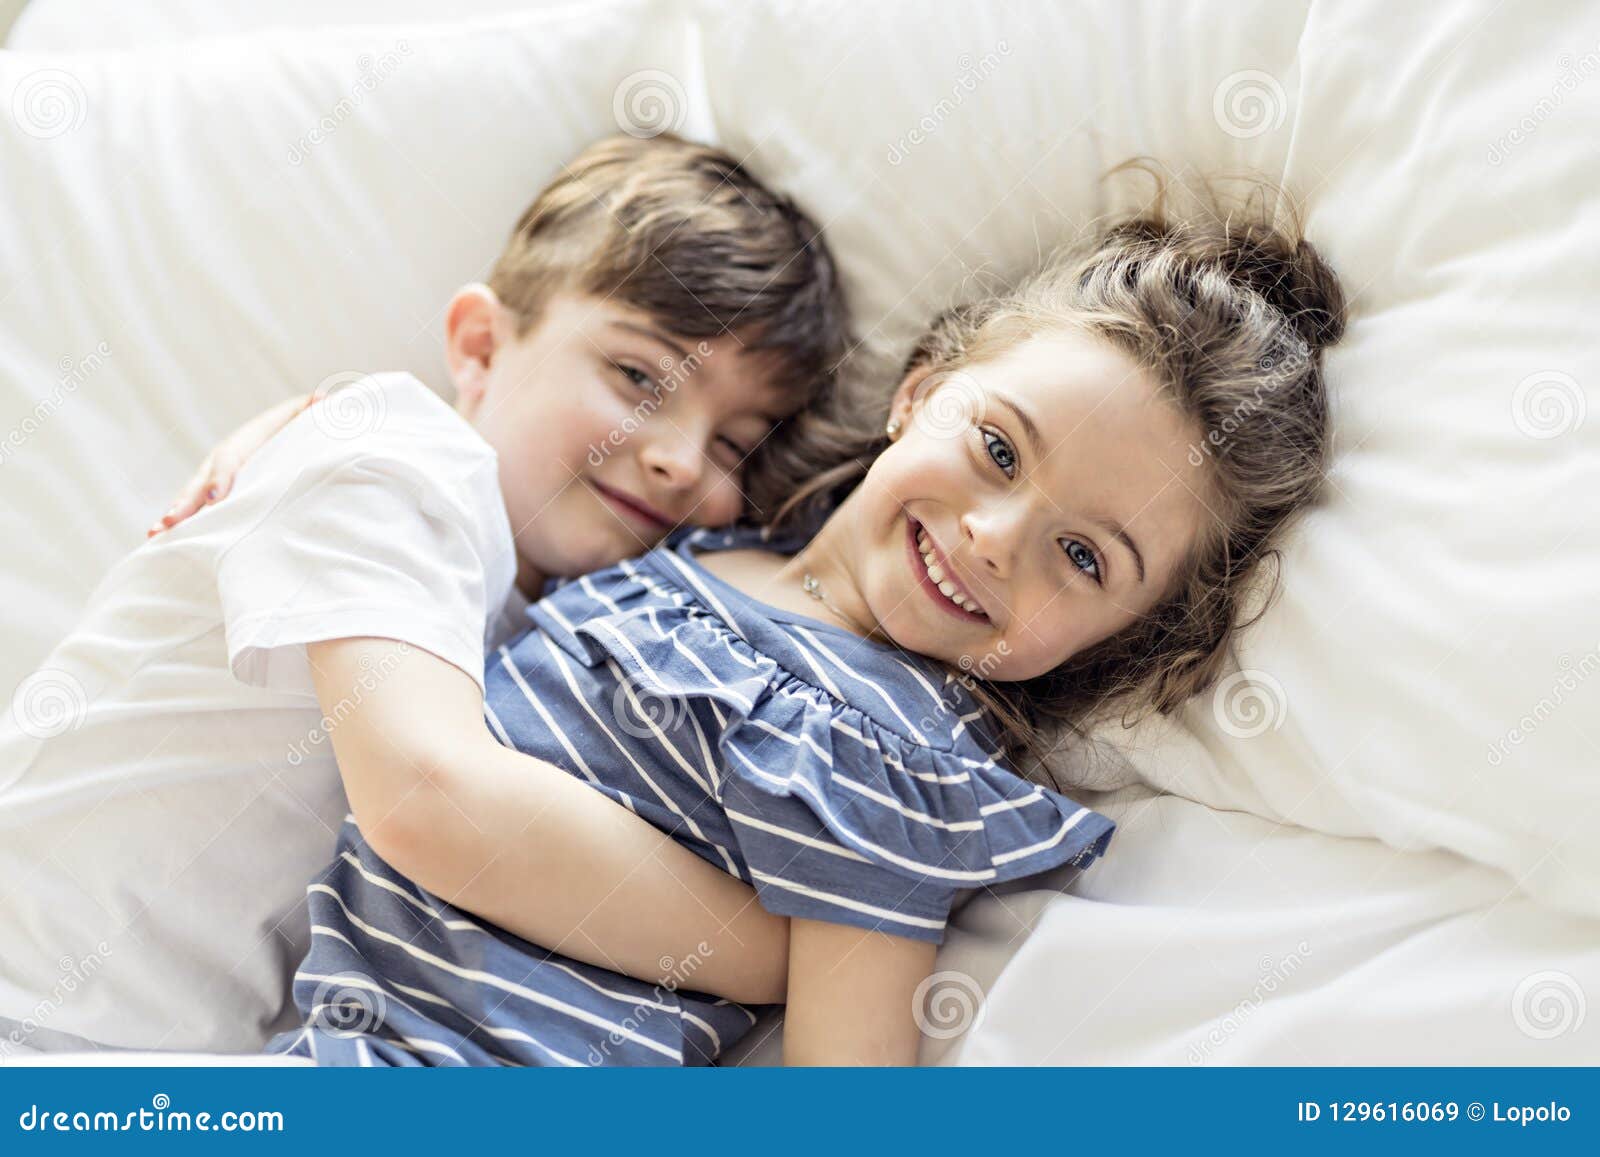 Молодая хочет сестру. Братик и сестричка в кровати. Фотосессия брат с сестрой. С сестренкой в постели. Мальчик лежит на маме.